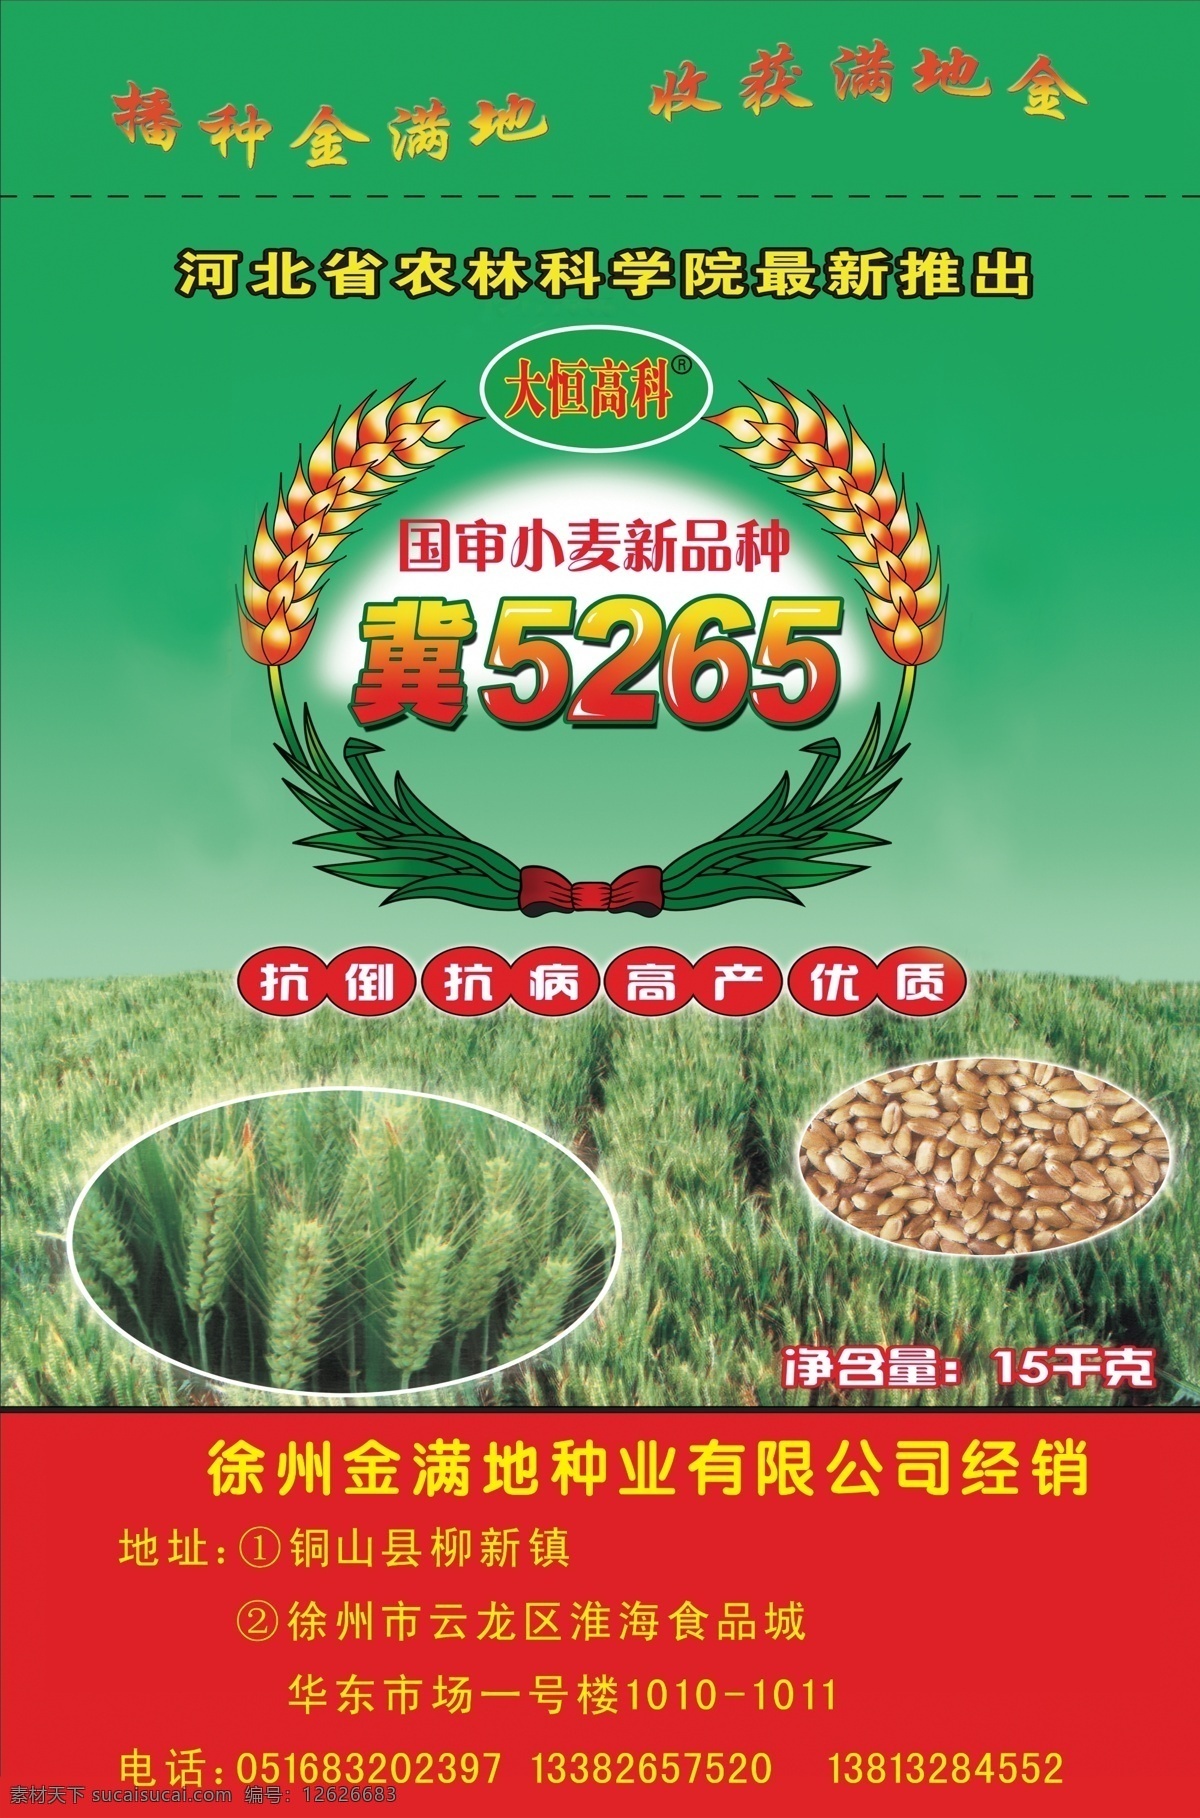 小麦袋子 小麦 标志 厂家 地址 电话 联系方式 宣传语 上面绿色底 下面红色底 源文件